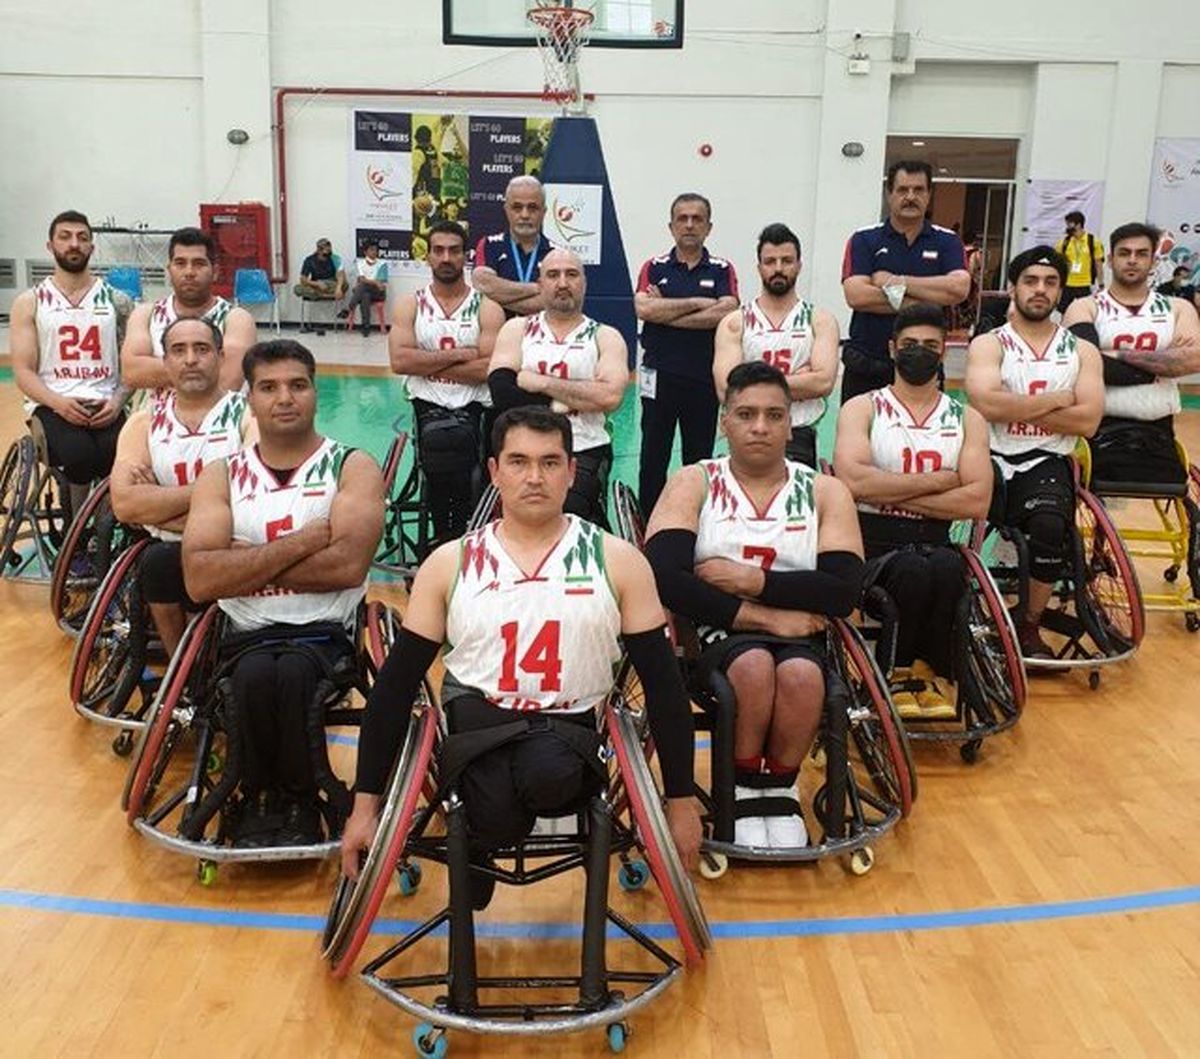 راهیابی مردان بسکتبال با ویلچر ایران به فینال آسیا و اقیانوسیه

